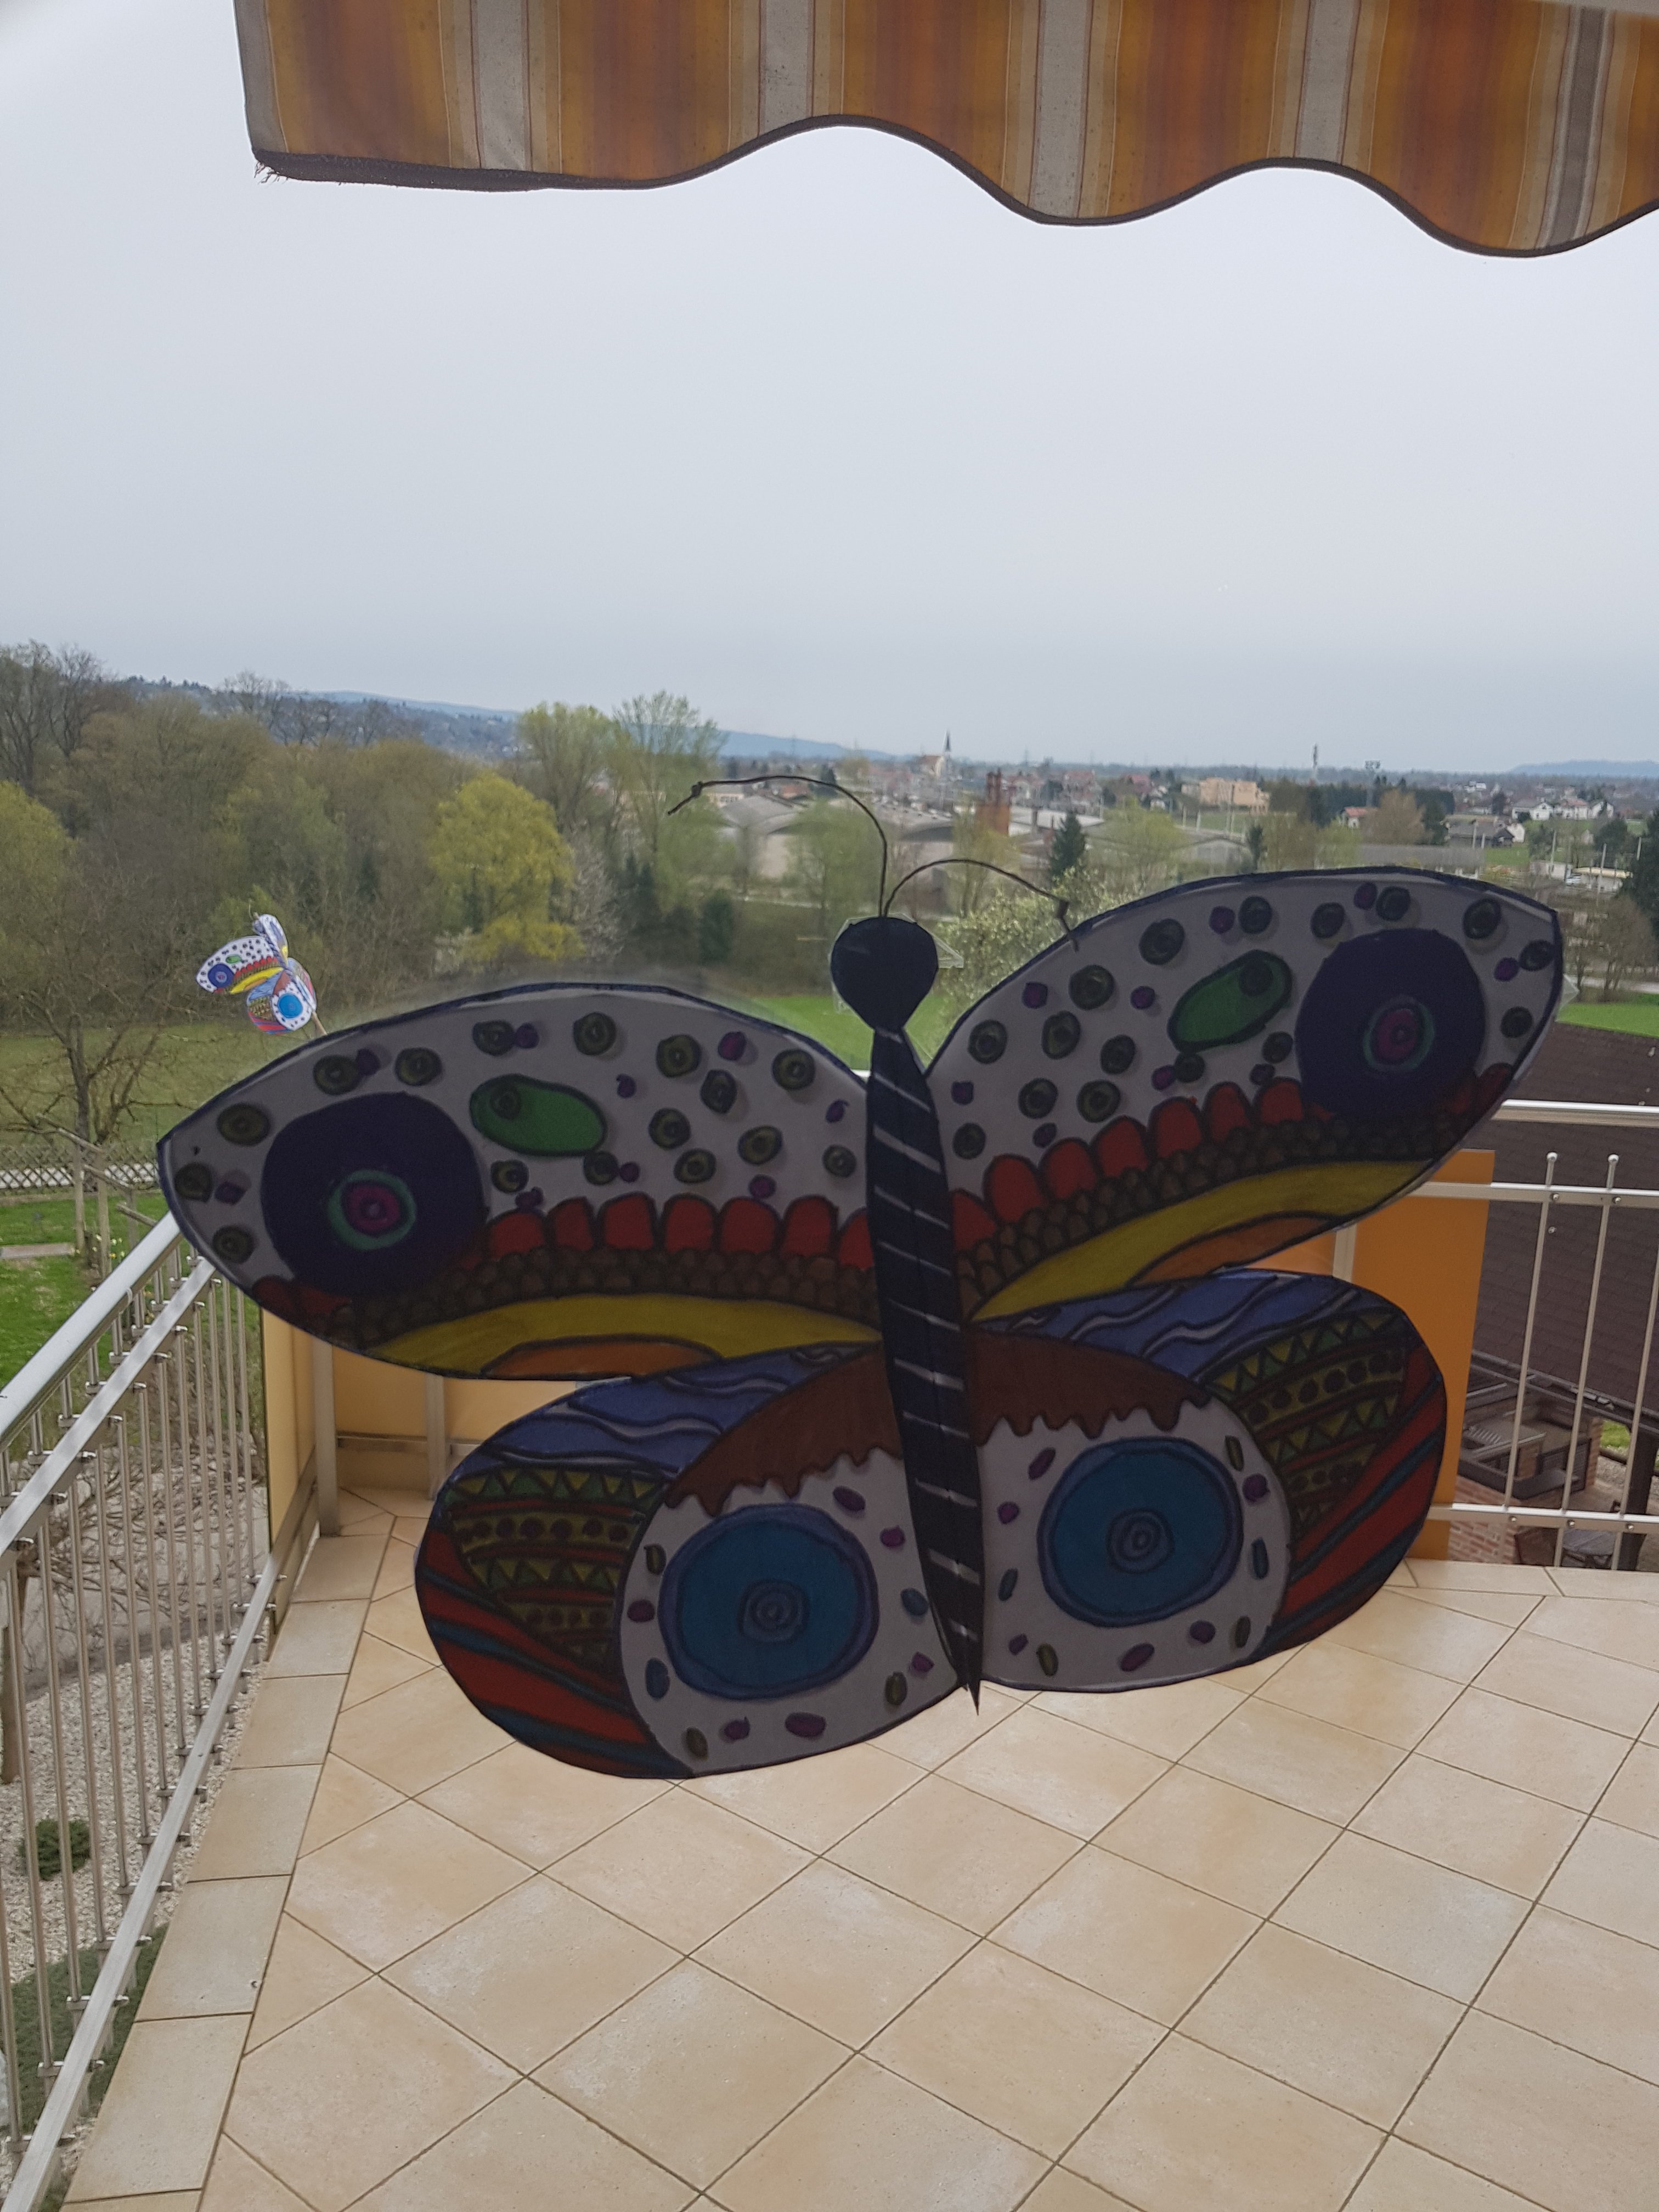 metulj-2-ela